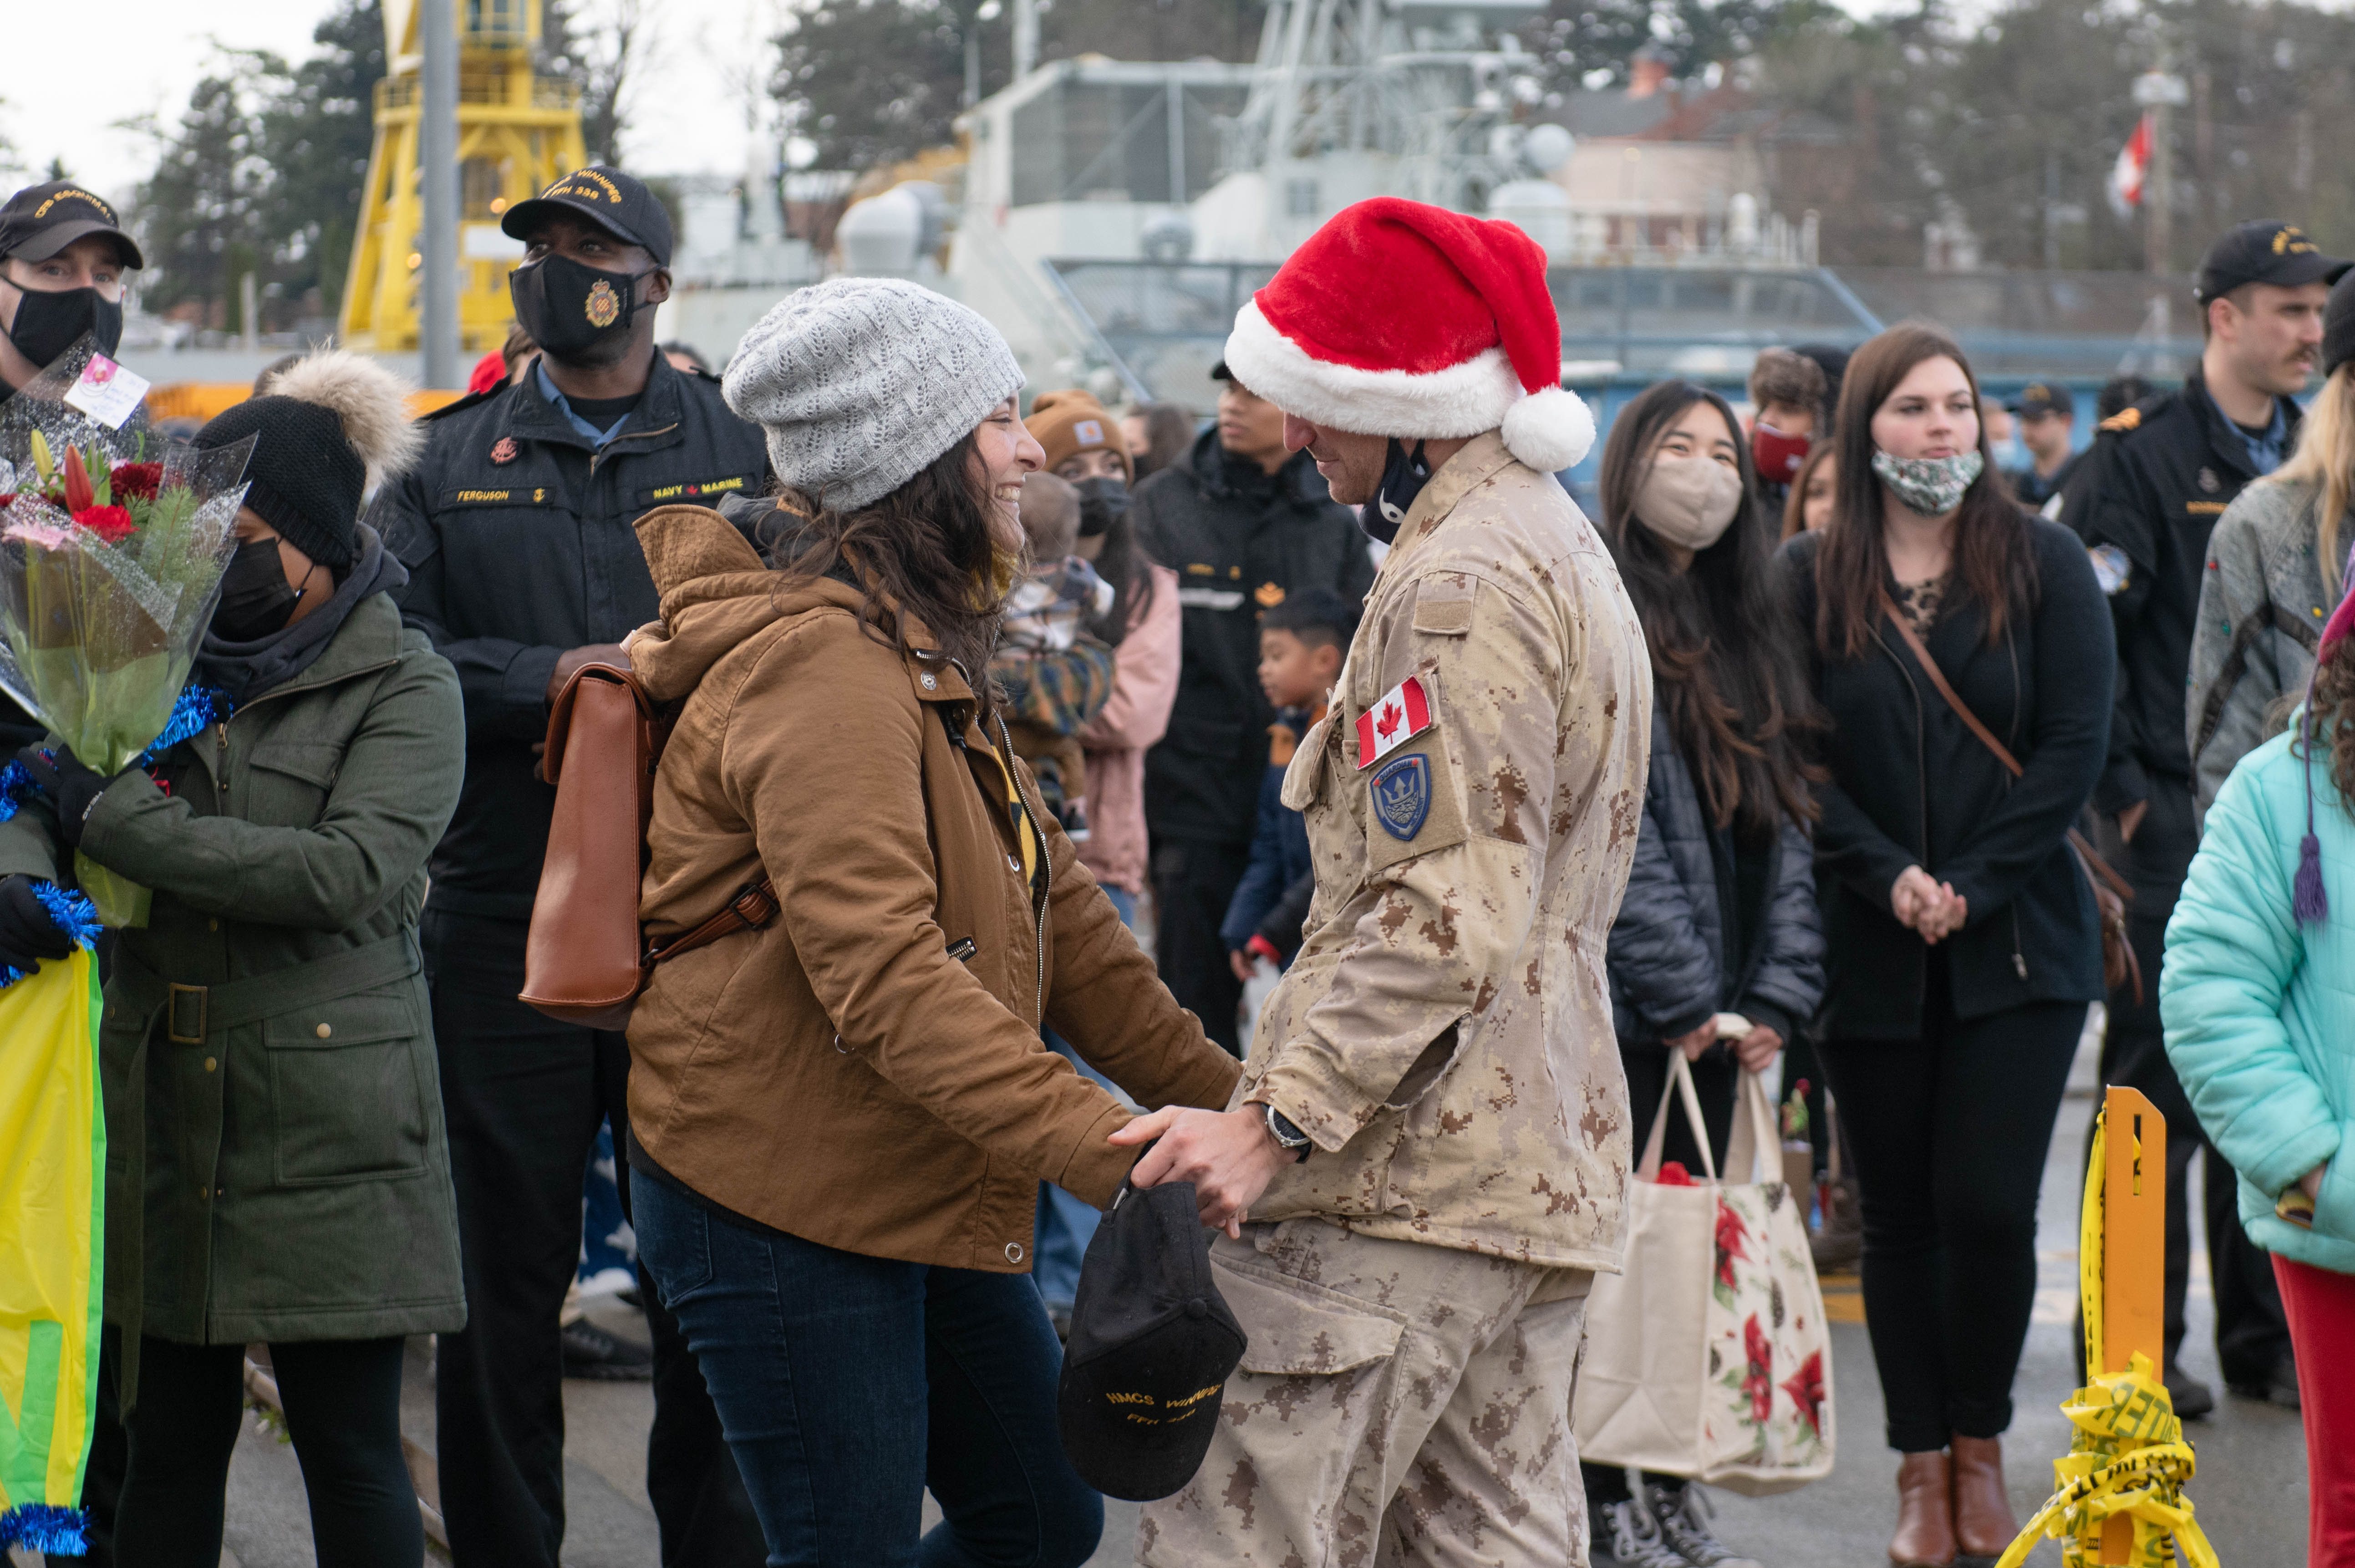 HMCS Winnipeg arrived home on December 16